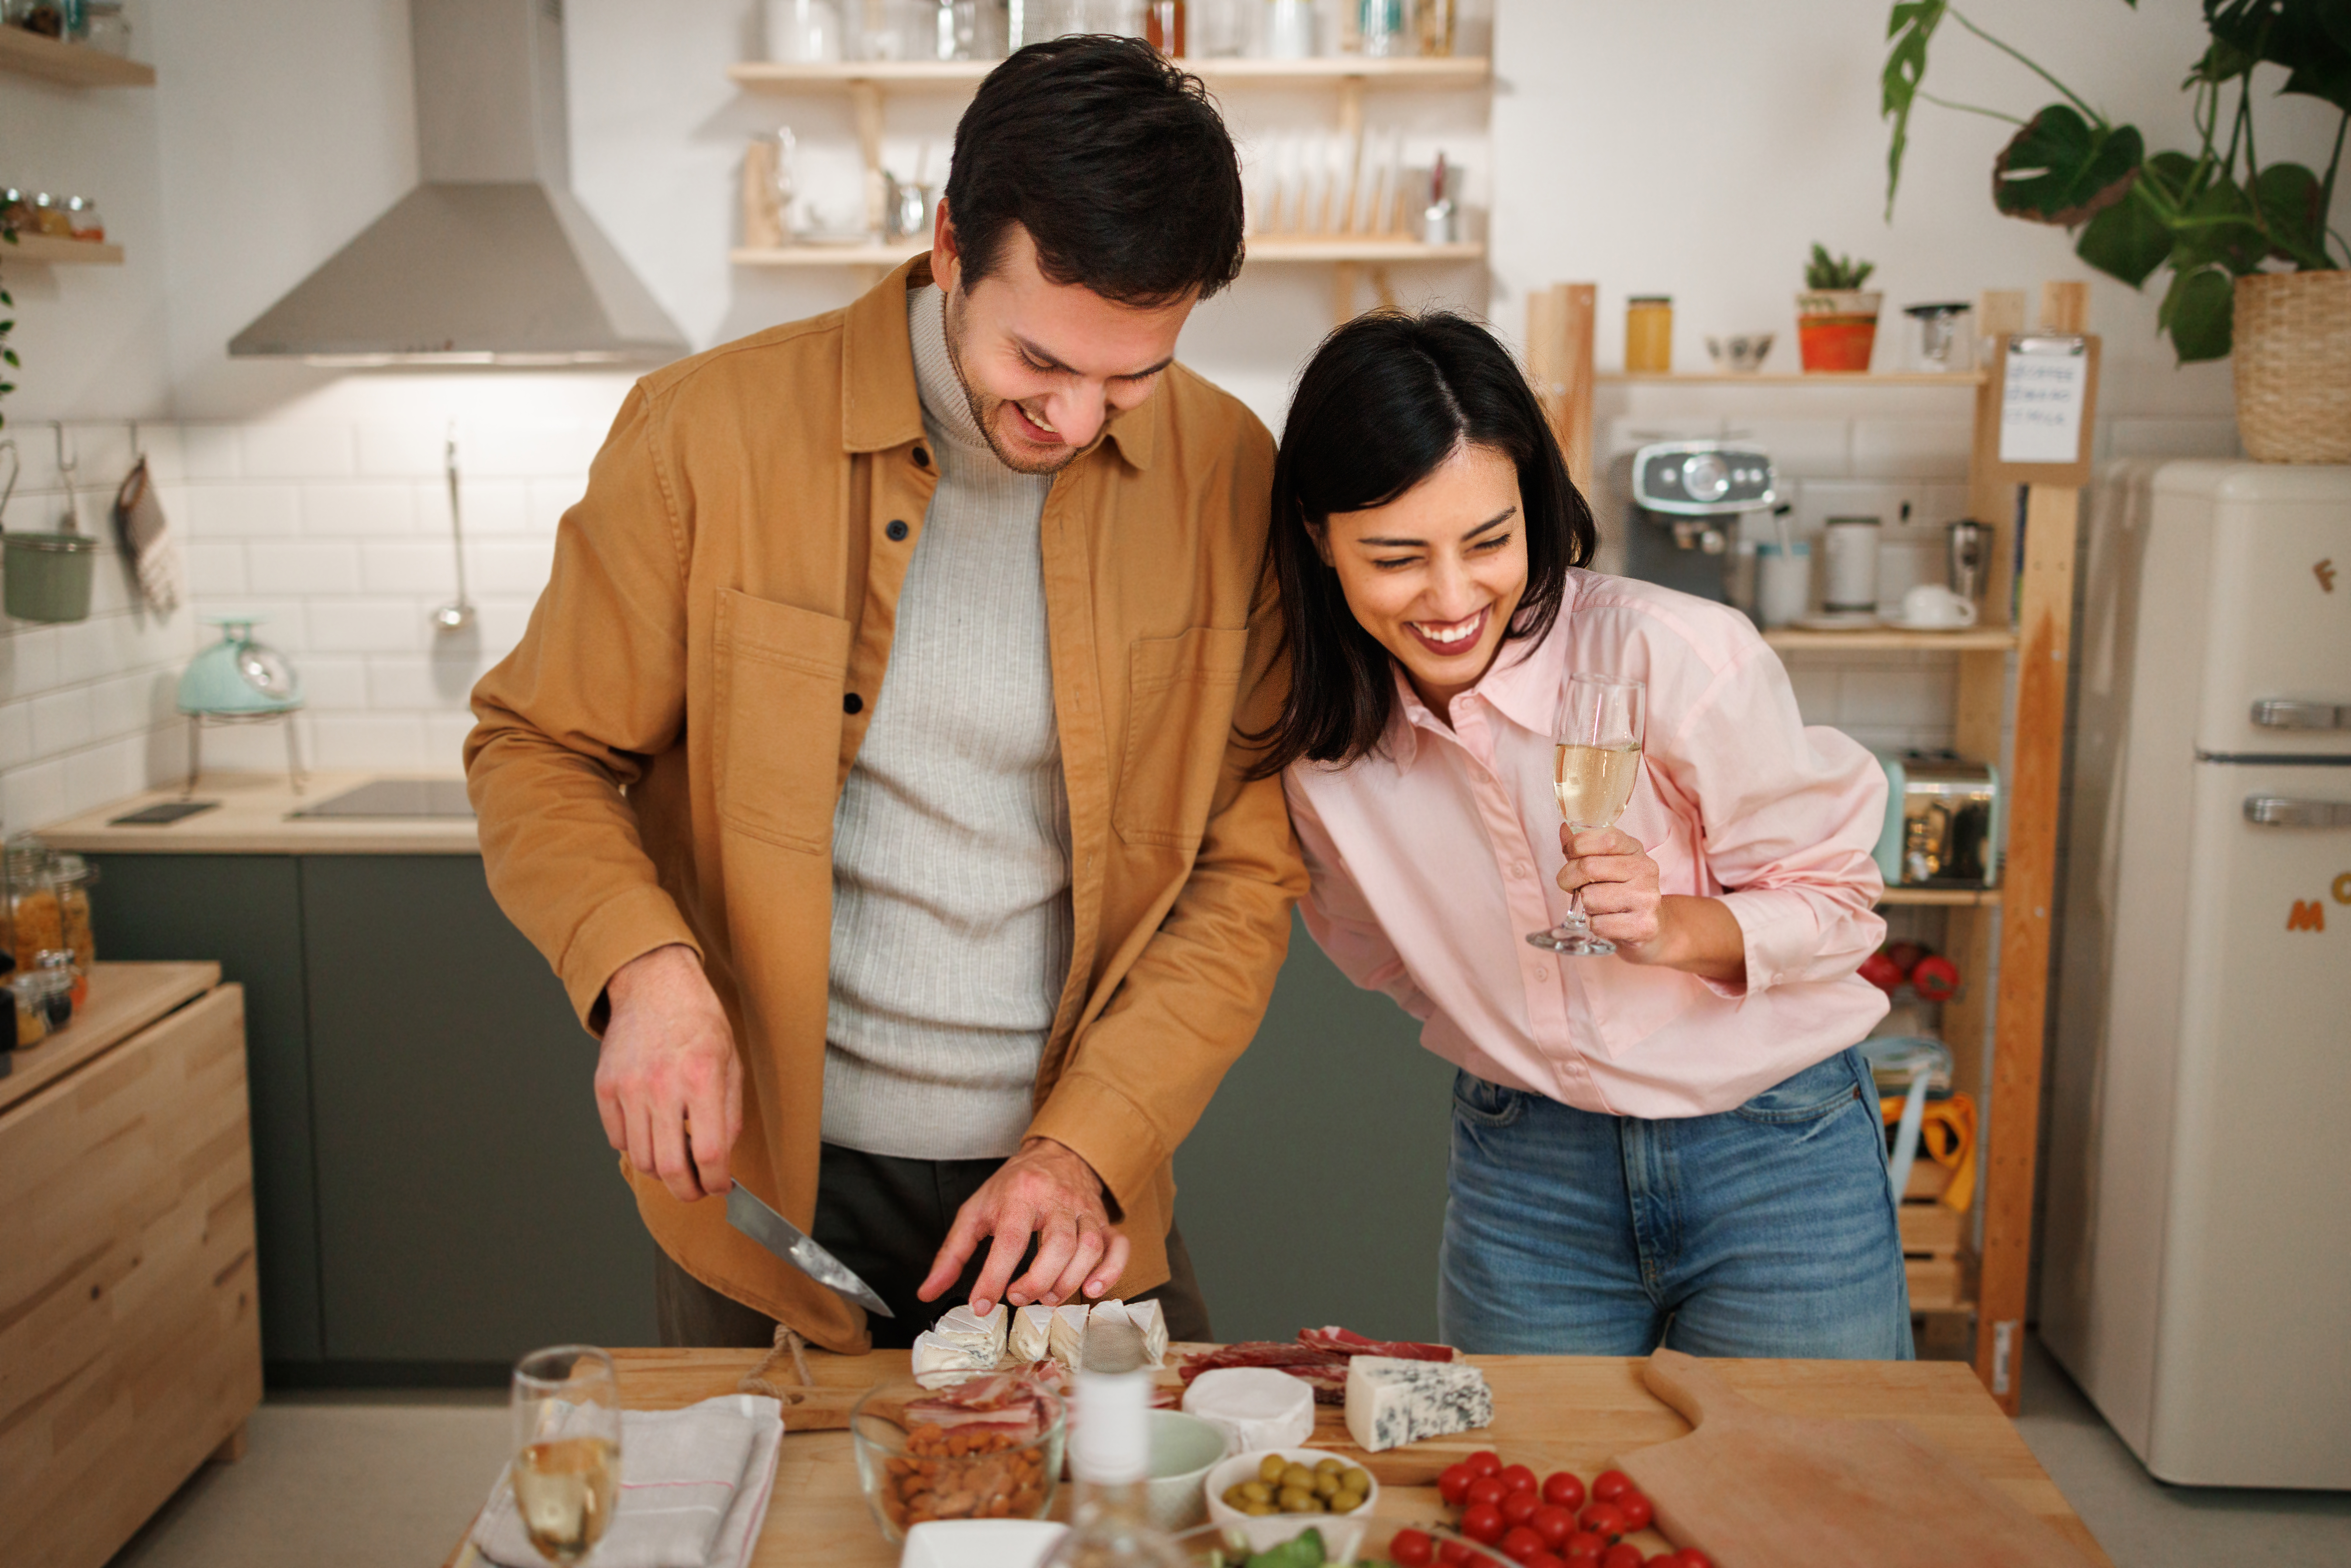 Ein glückliches Paar beim gemeinsamen Kochen | Quelle: Getty Images